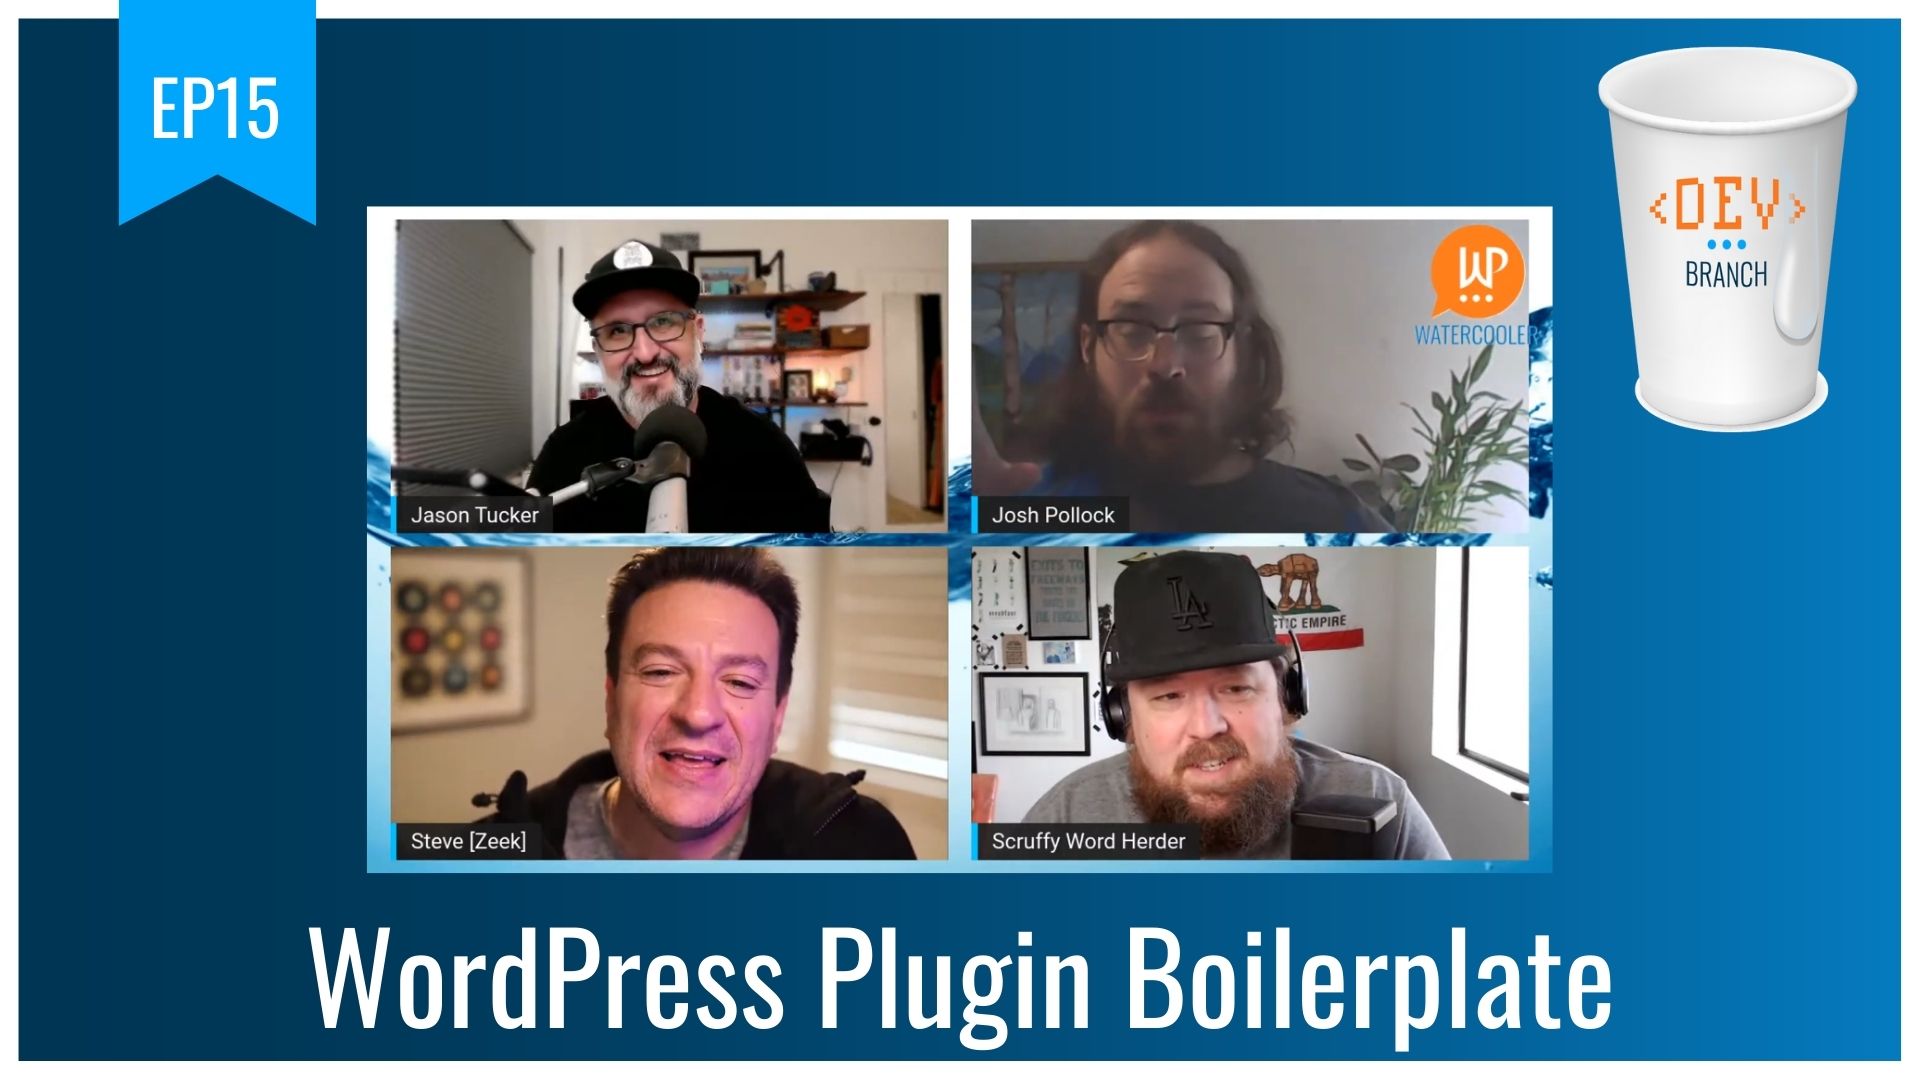 EP15 – WordPress Plugin Boilerplate